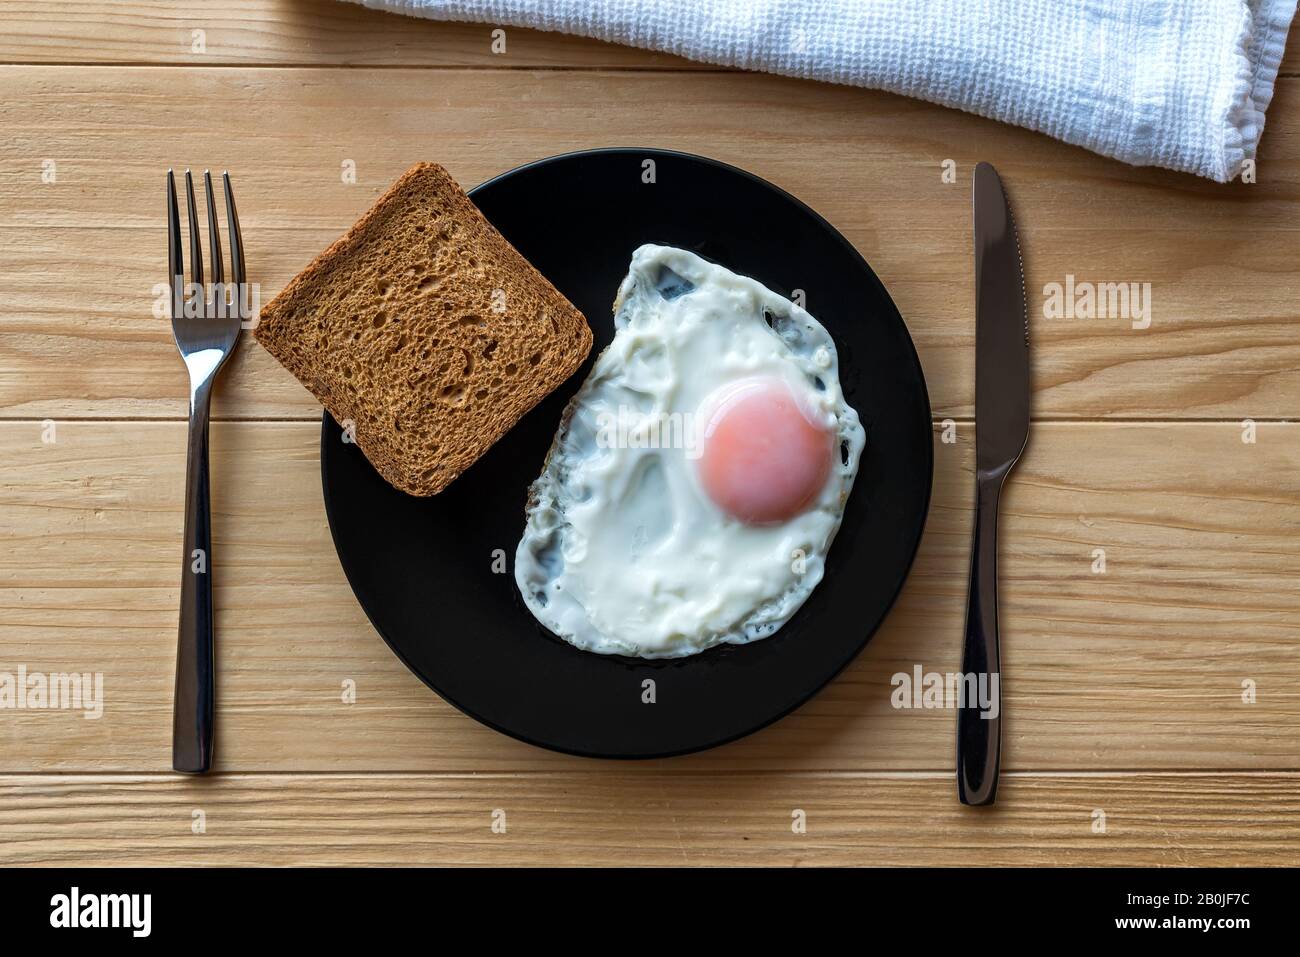 Uovo fritto chiudere in una piastra nera su un tavolo di legno con pane tostato e utensili. Cibo per la colazione. Lato soleggiato uovo fritto morbido Foto Stock